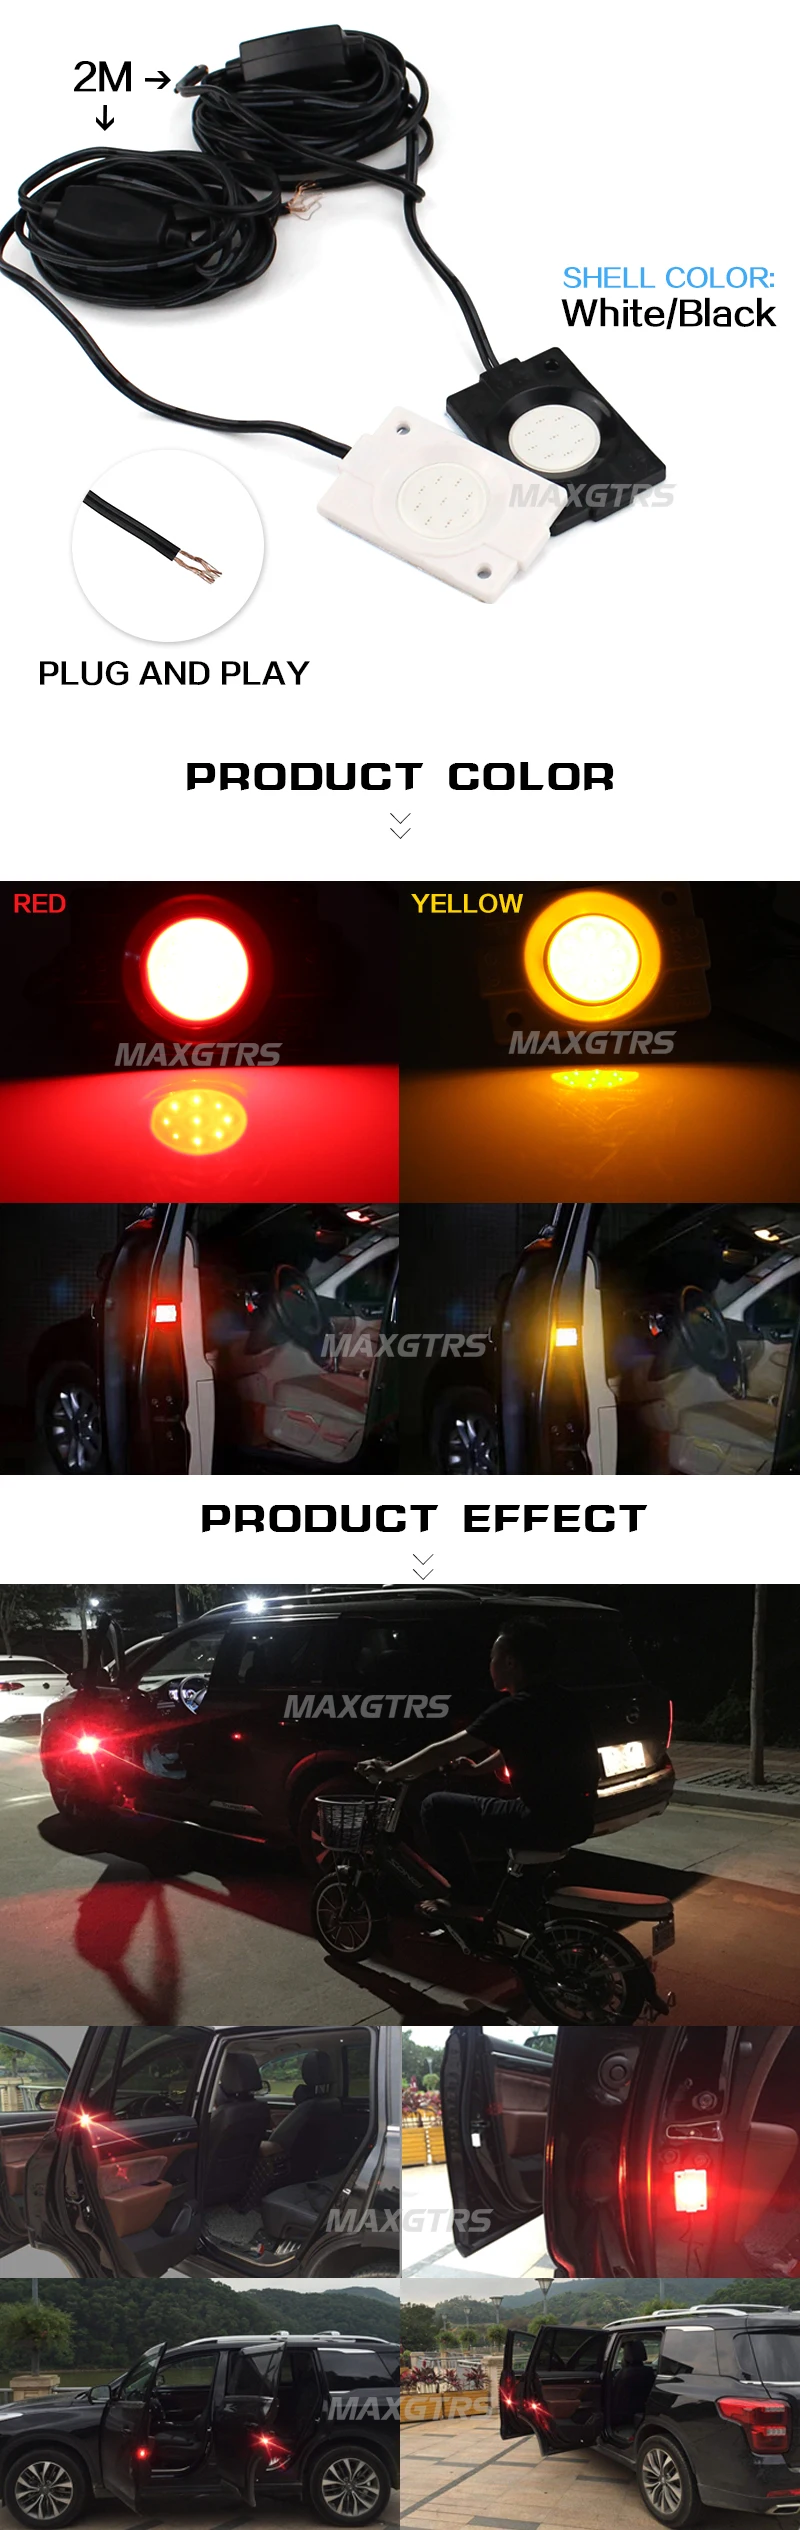 2x автомобиль красный желтый светодиодный стробоскоп дверь открытый Предупреждение ющий освещенные знаки сигнал Анти светодиодный свет вспышки декоративный индикатор анти-столкновения лампа